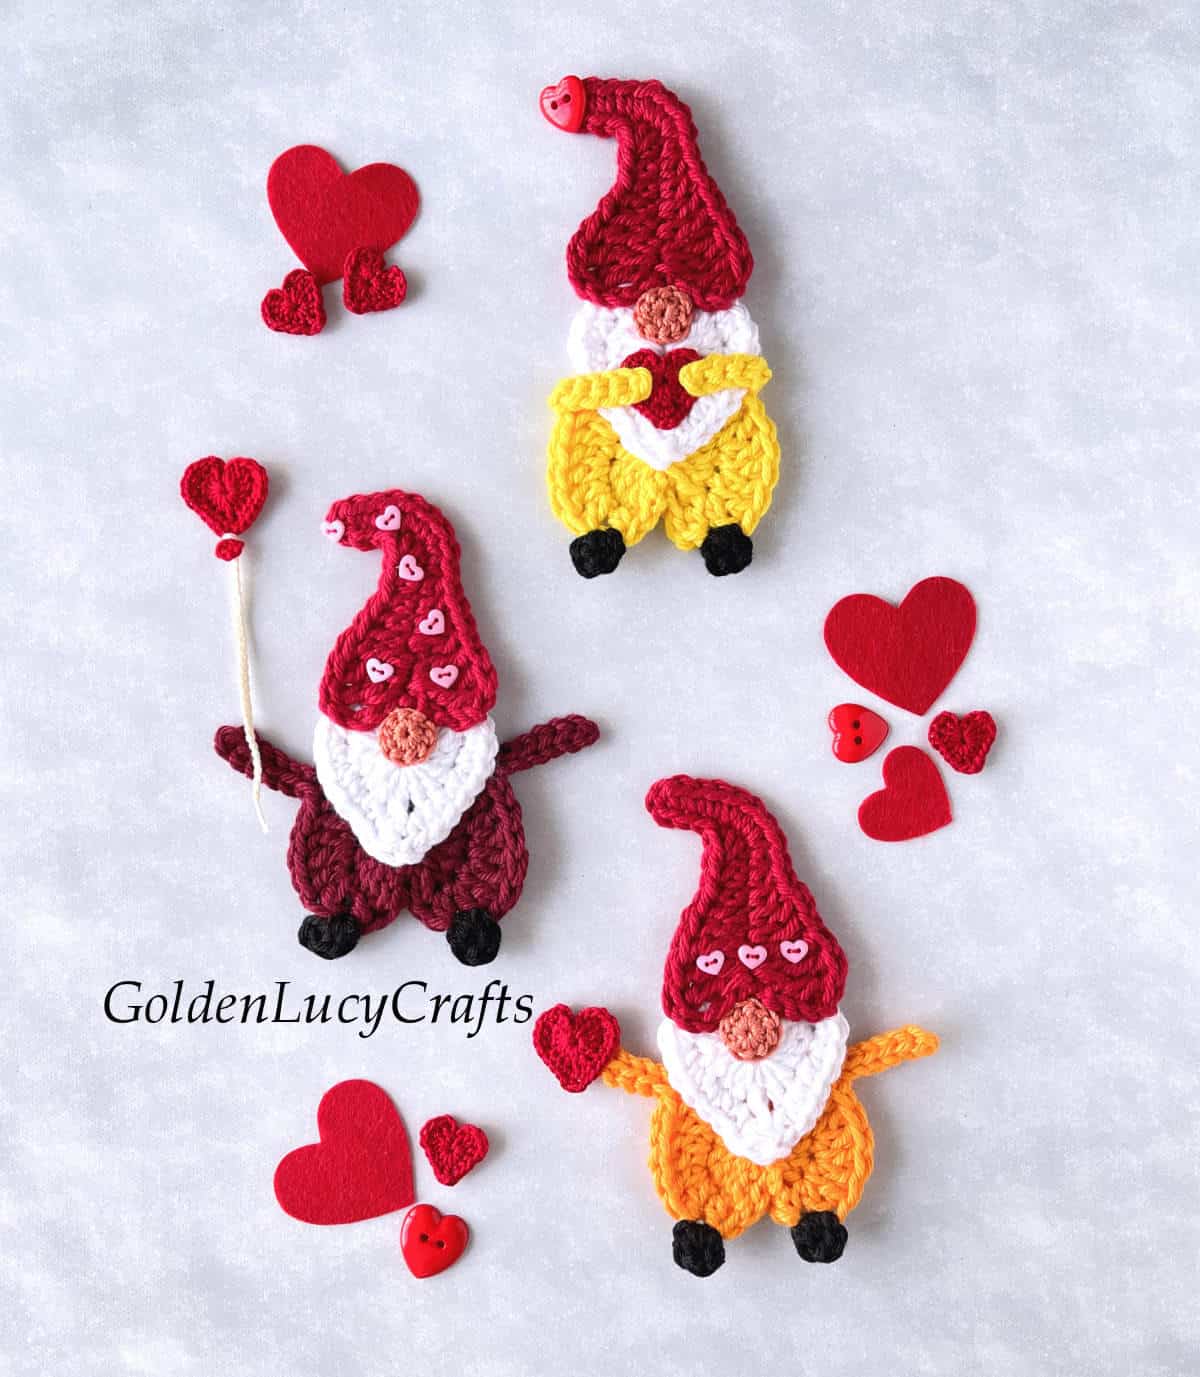 Crochet Valentine's Day gnome appliques.